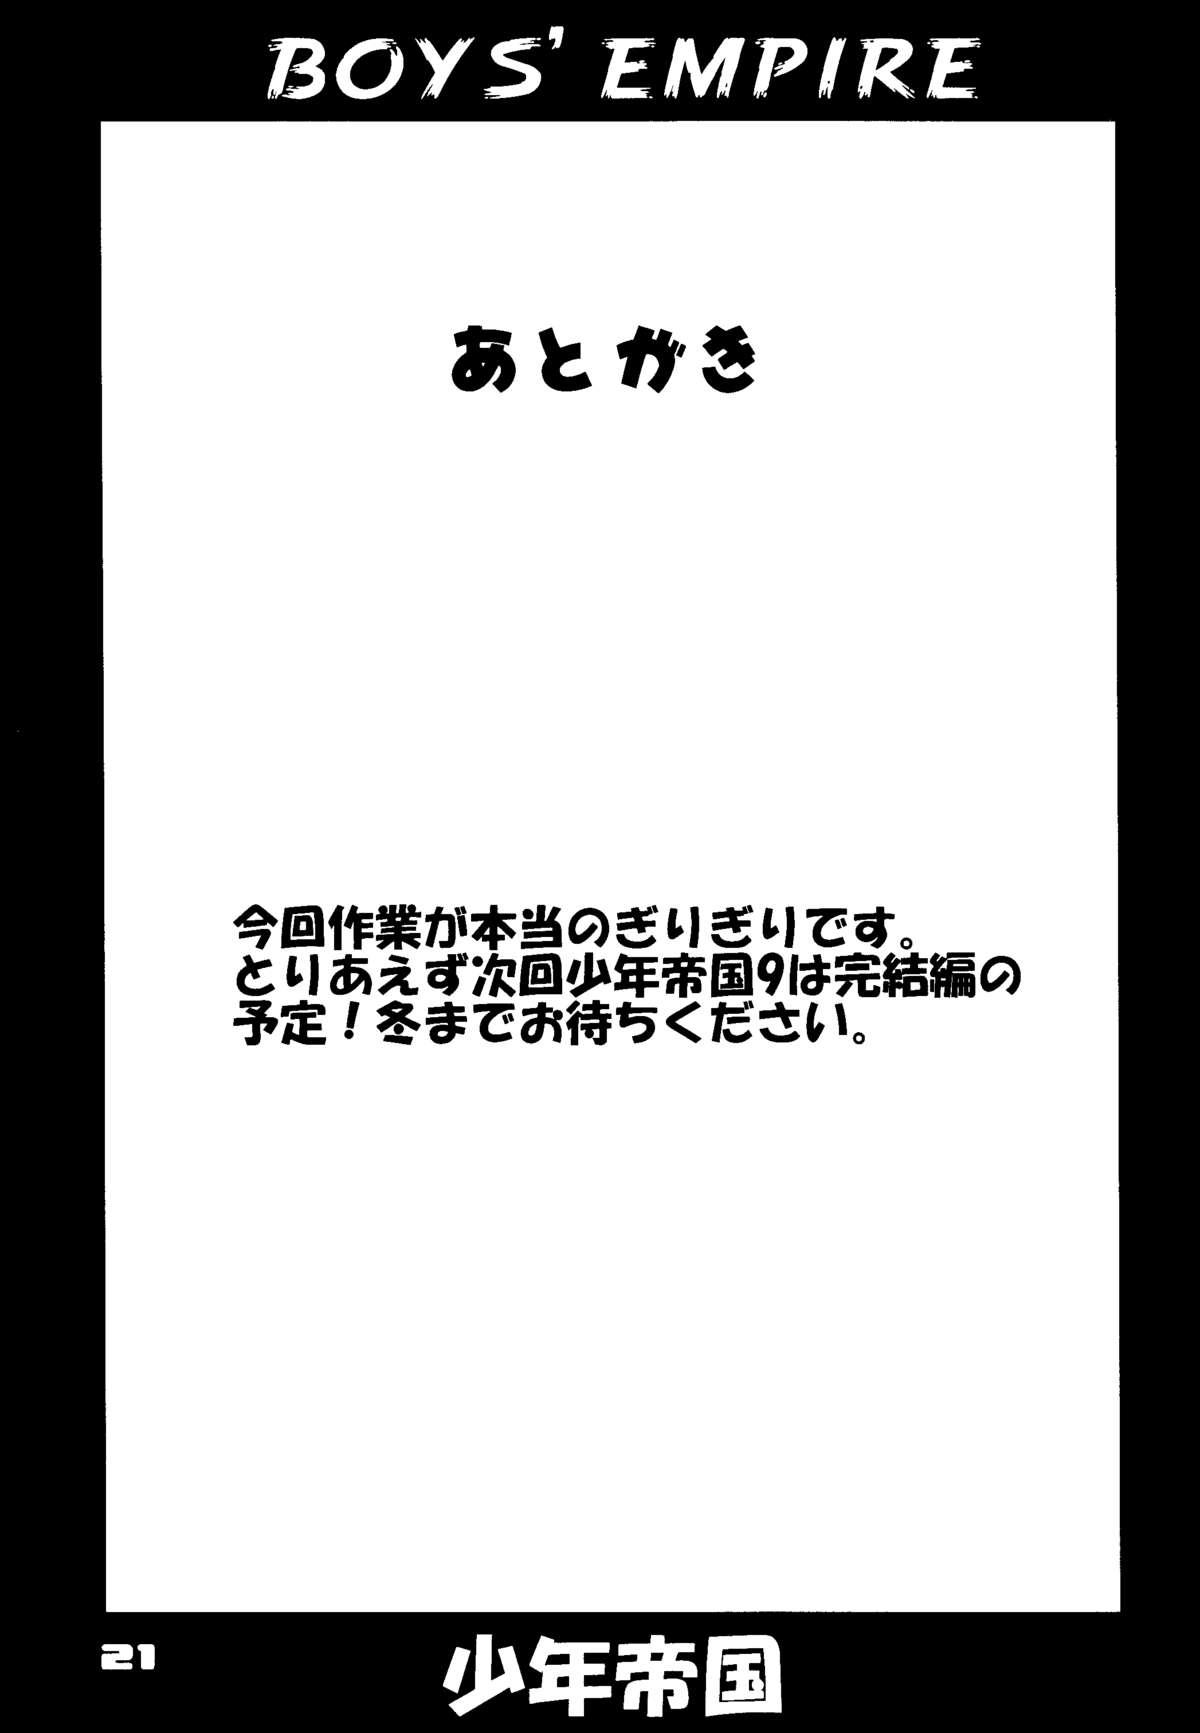 Shounen Teikoku 8 - Boys' Empire 8 19